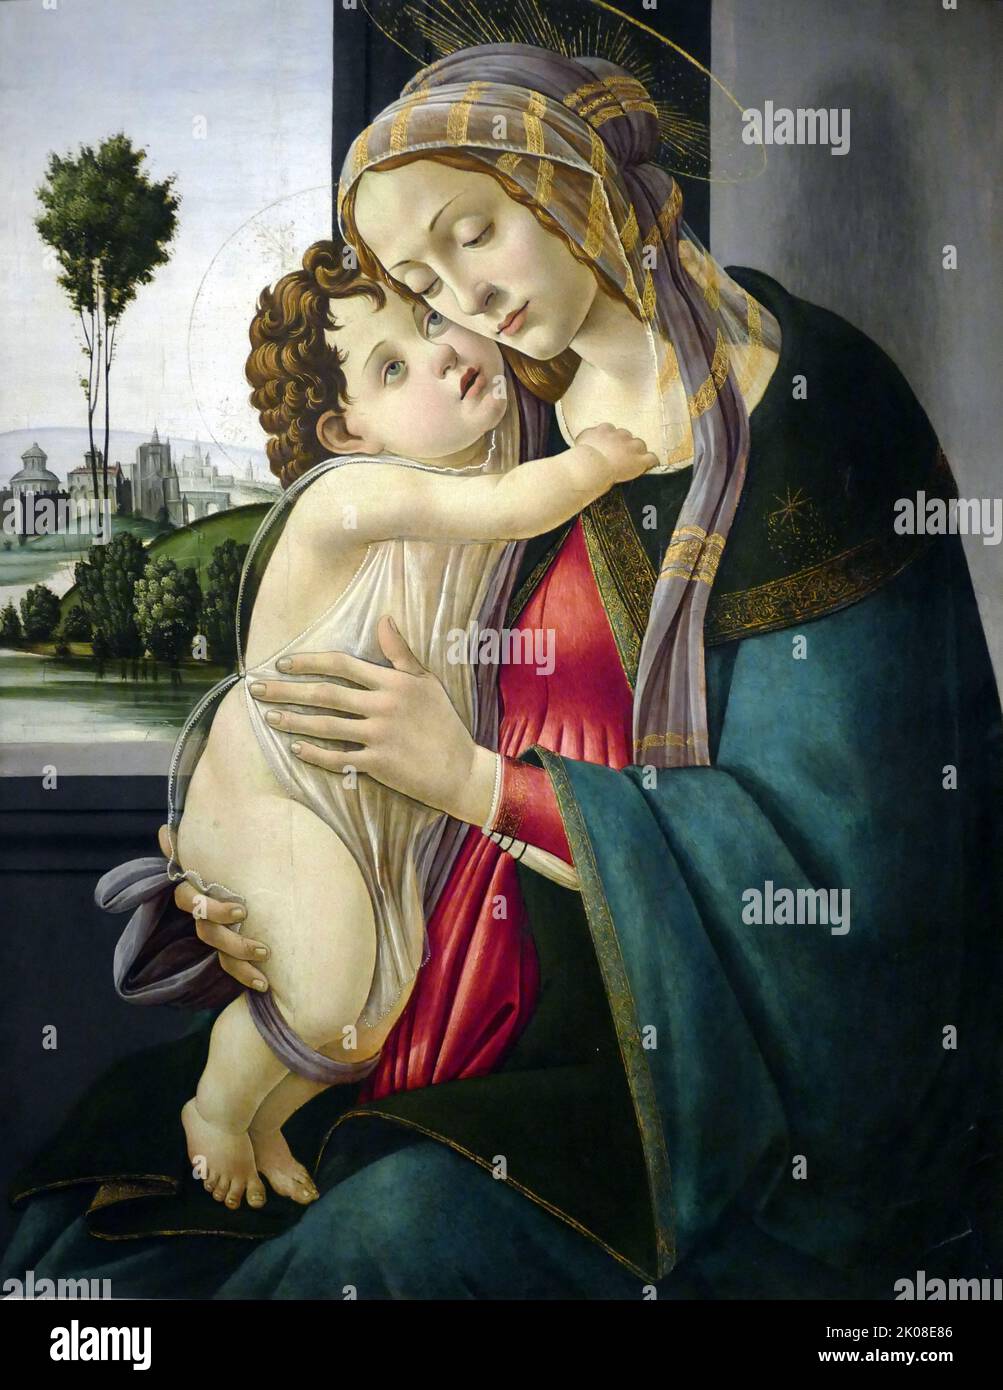 La Vierge à l'enfant, c1475-1500, de l'atelier d'Alessandro di Mariano di Vanni Filipepi (c. 1445 - 17 mai 1510), connu sous le nom de Sandro Botticelli, était un peintre italien du début de la Renaissance Banque D'Images